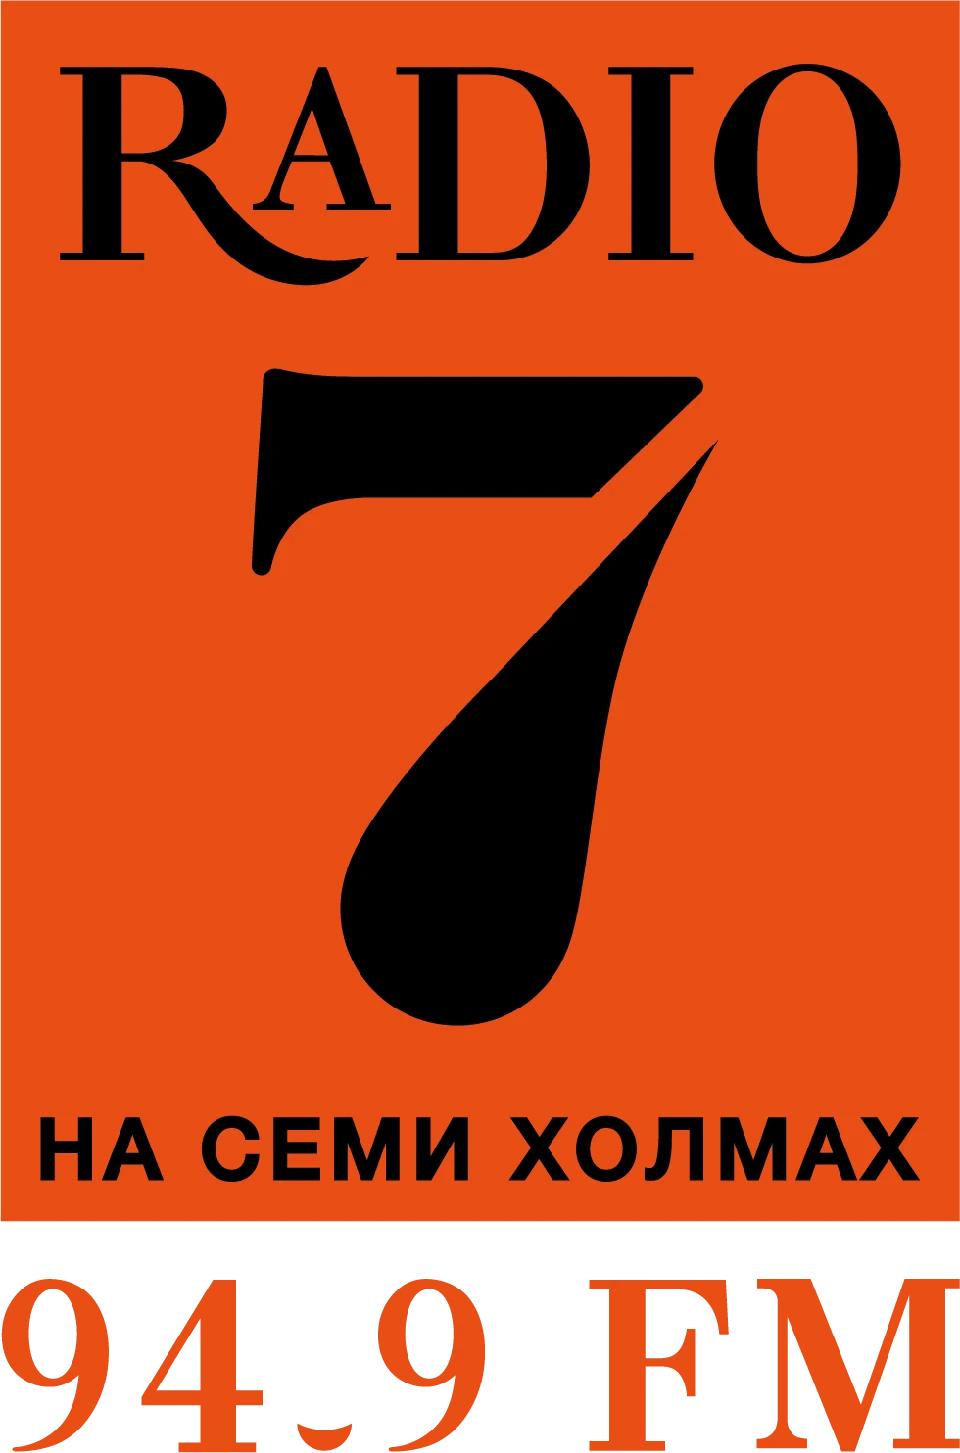 Радио семь новосибирск. Радио 7. Радио 7 логотип. Радио 7 на семи холмах. Логотип радиостанции на 7 холмах.